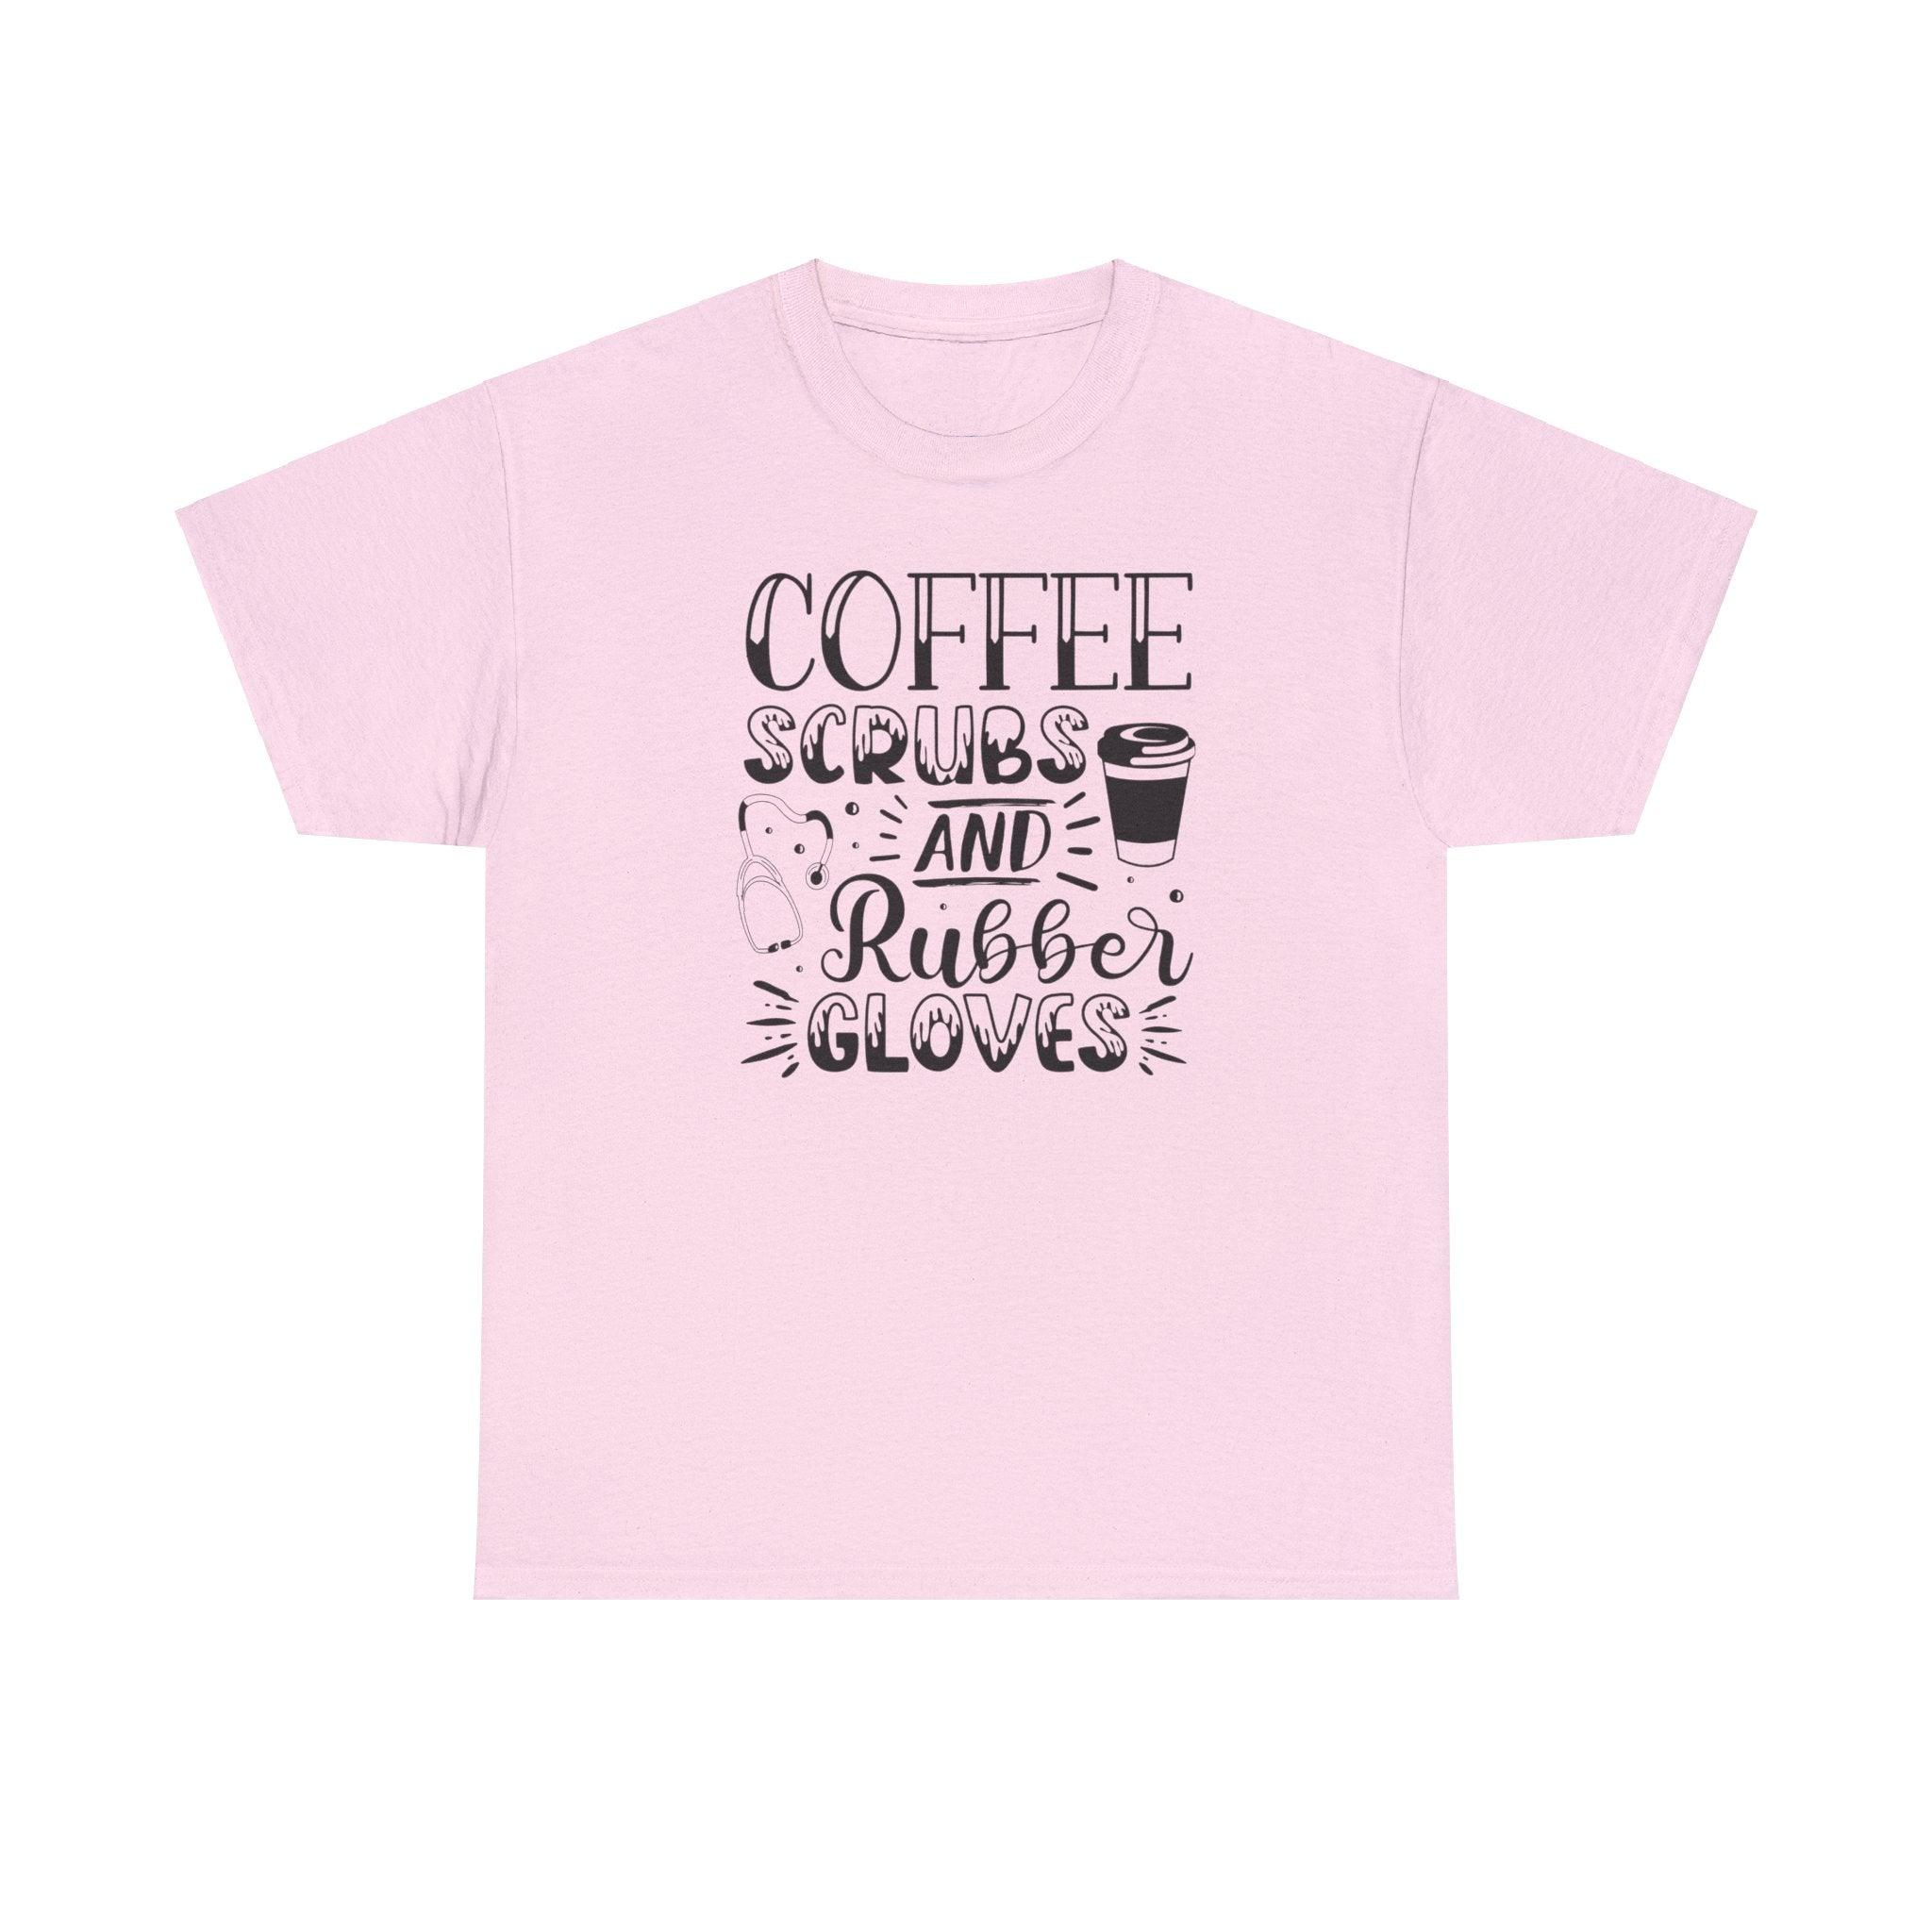 Nurse coffee shirt - Epic Shirts 403